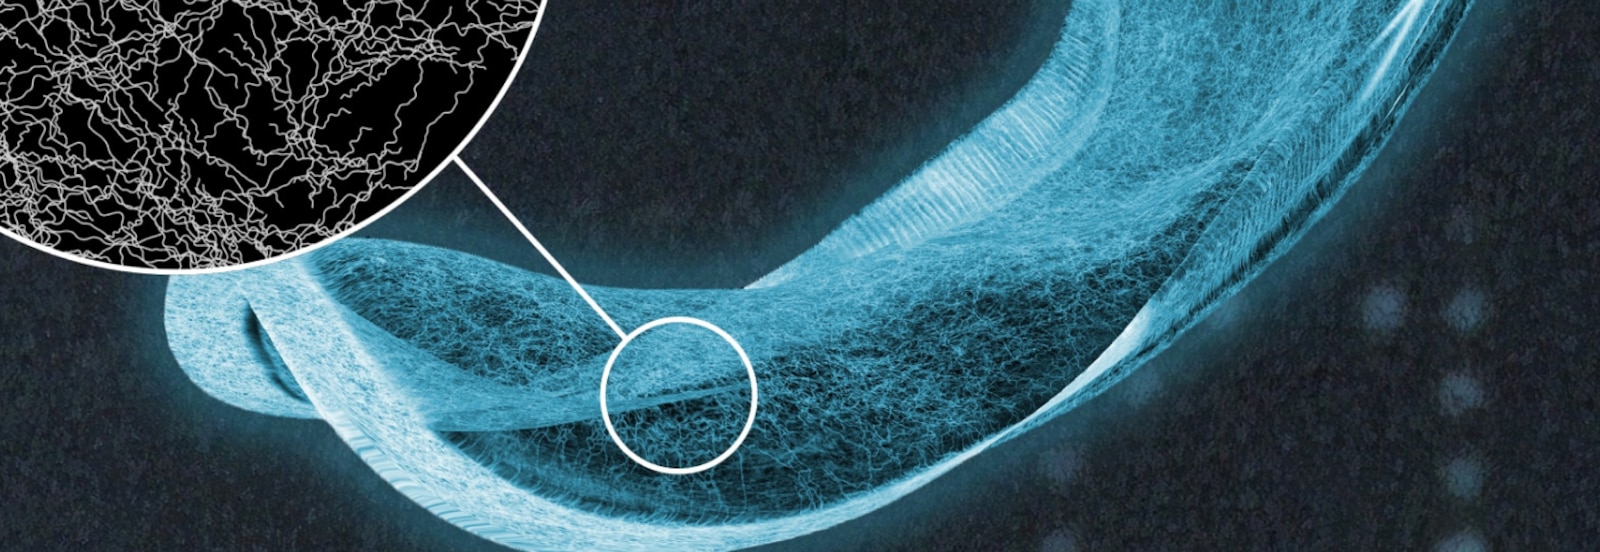 TENA nedvszívó betét röntgenképe, amelyen közelről láthatók a nedvszívó magban lévő rostszálak 